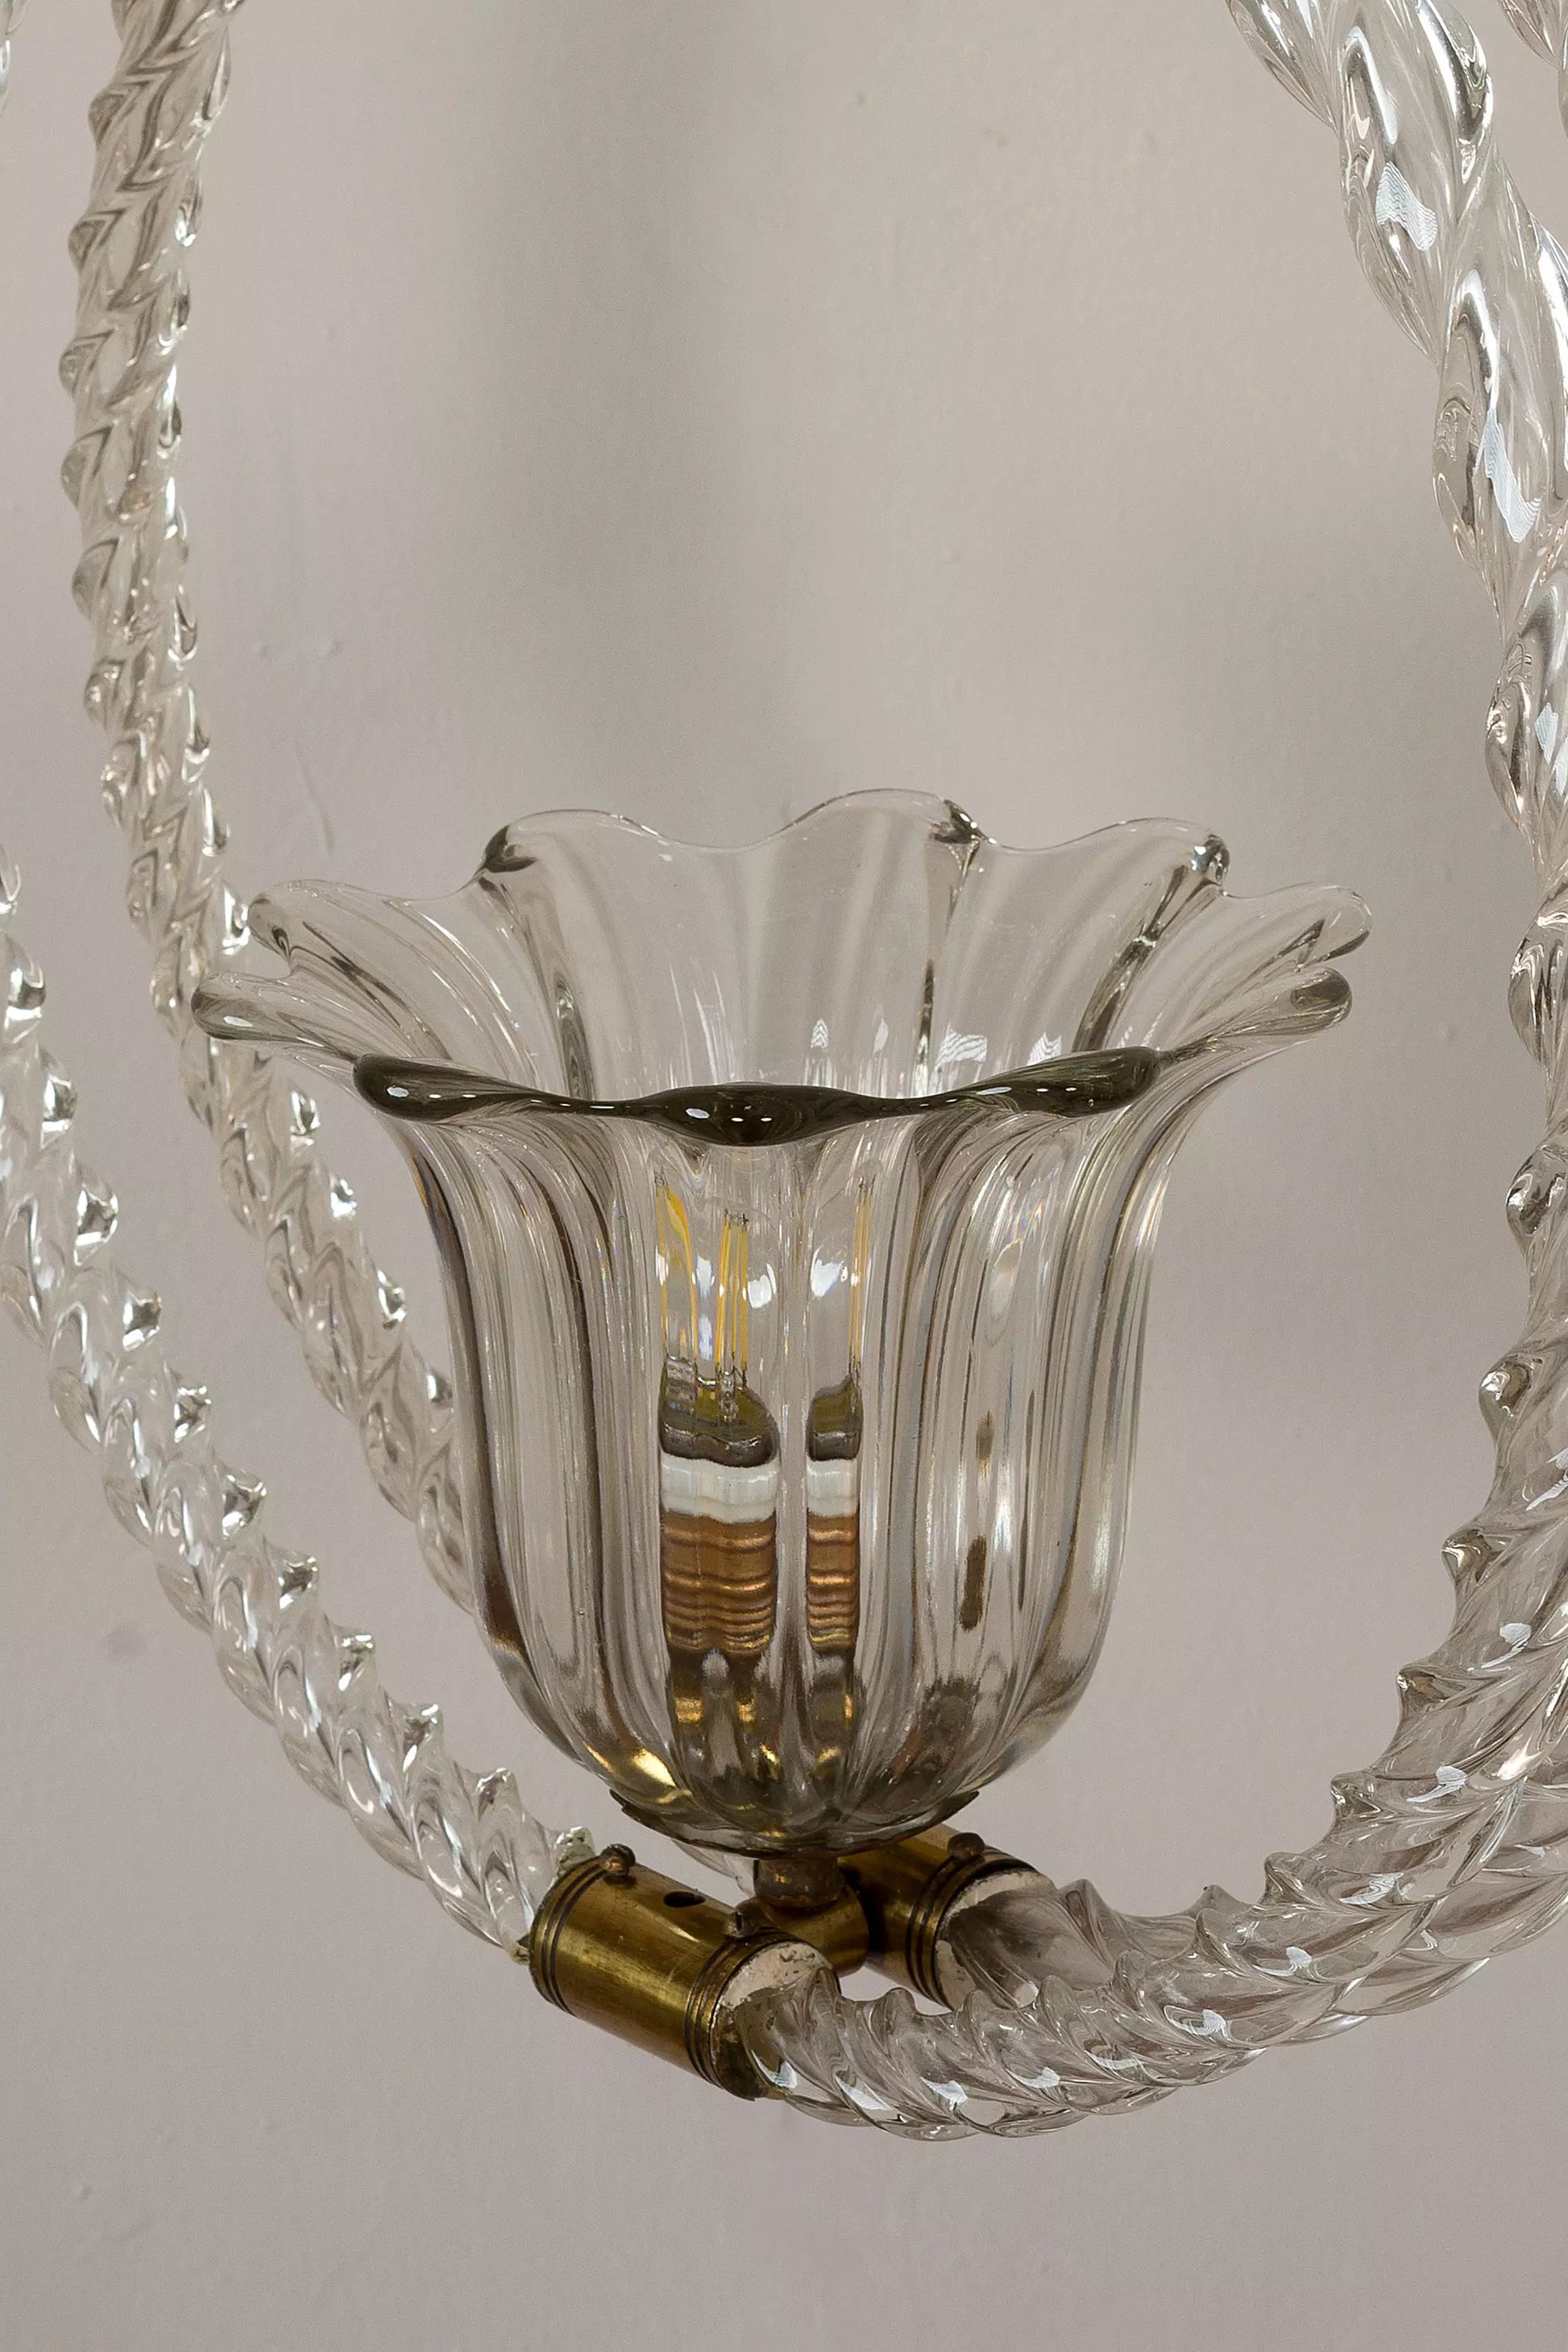 Coppa centrale del lampadario realizzata in vetro veneziano.| Lo Stile Italiano